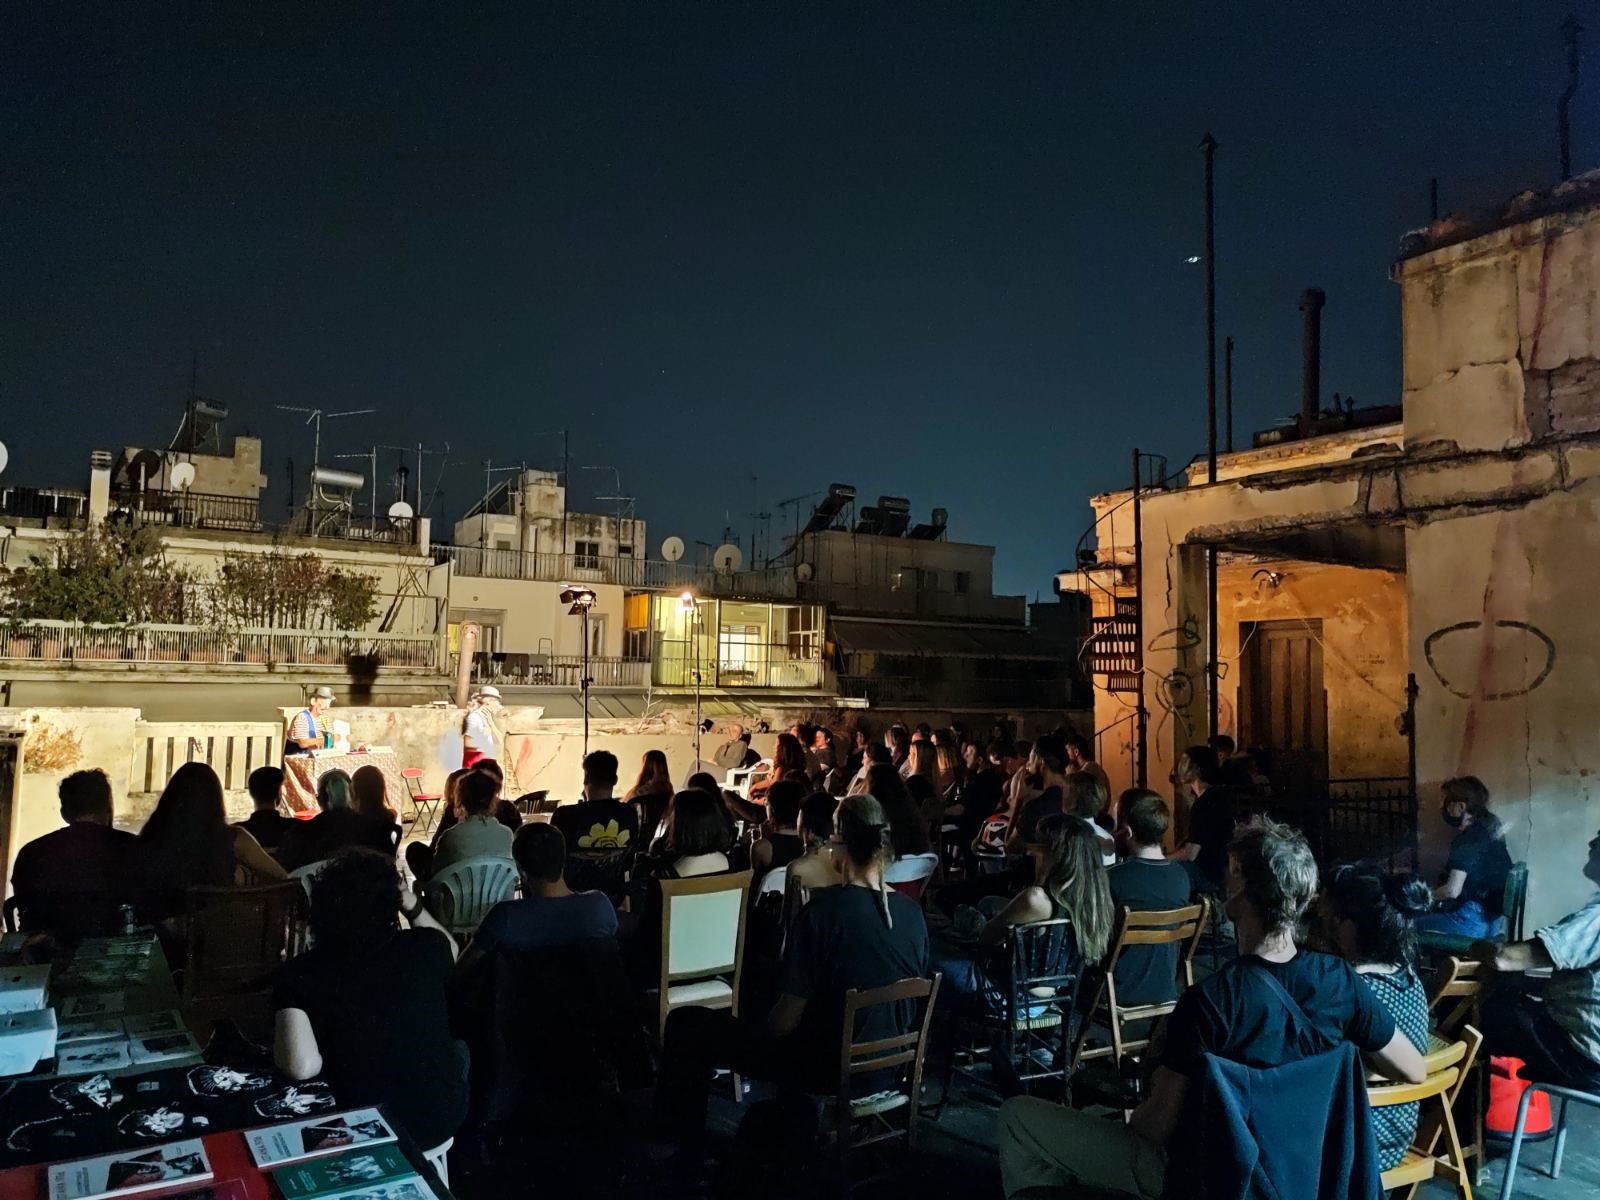 Φωτογραφίες της παράστασης “Η Αλήθεια πέθανε” από τις Τσιριτσάντσουλες στην ταράτσα της Κατάληψης